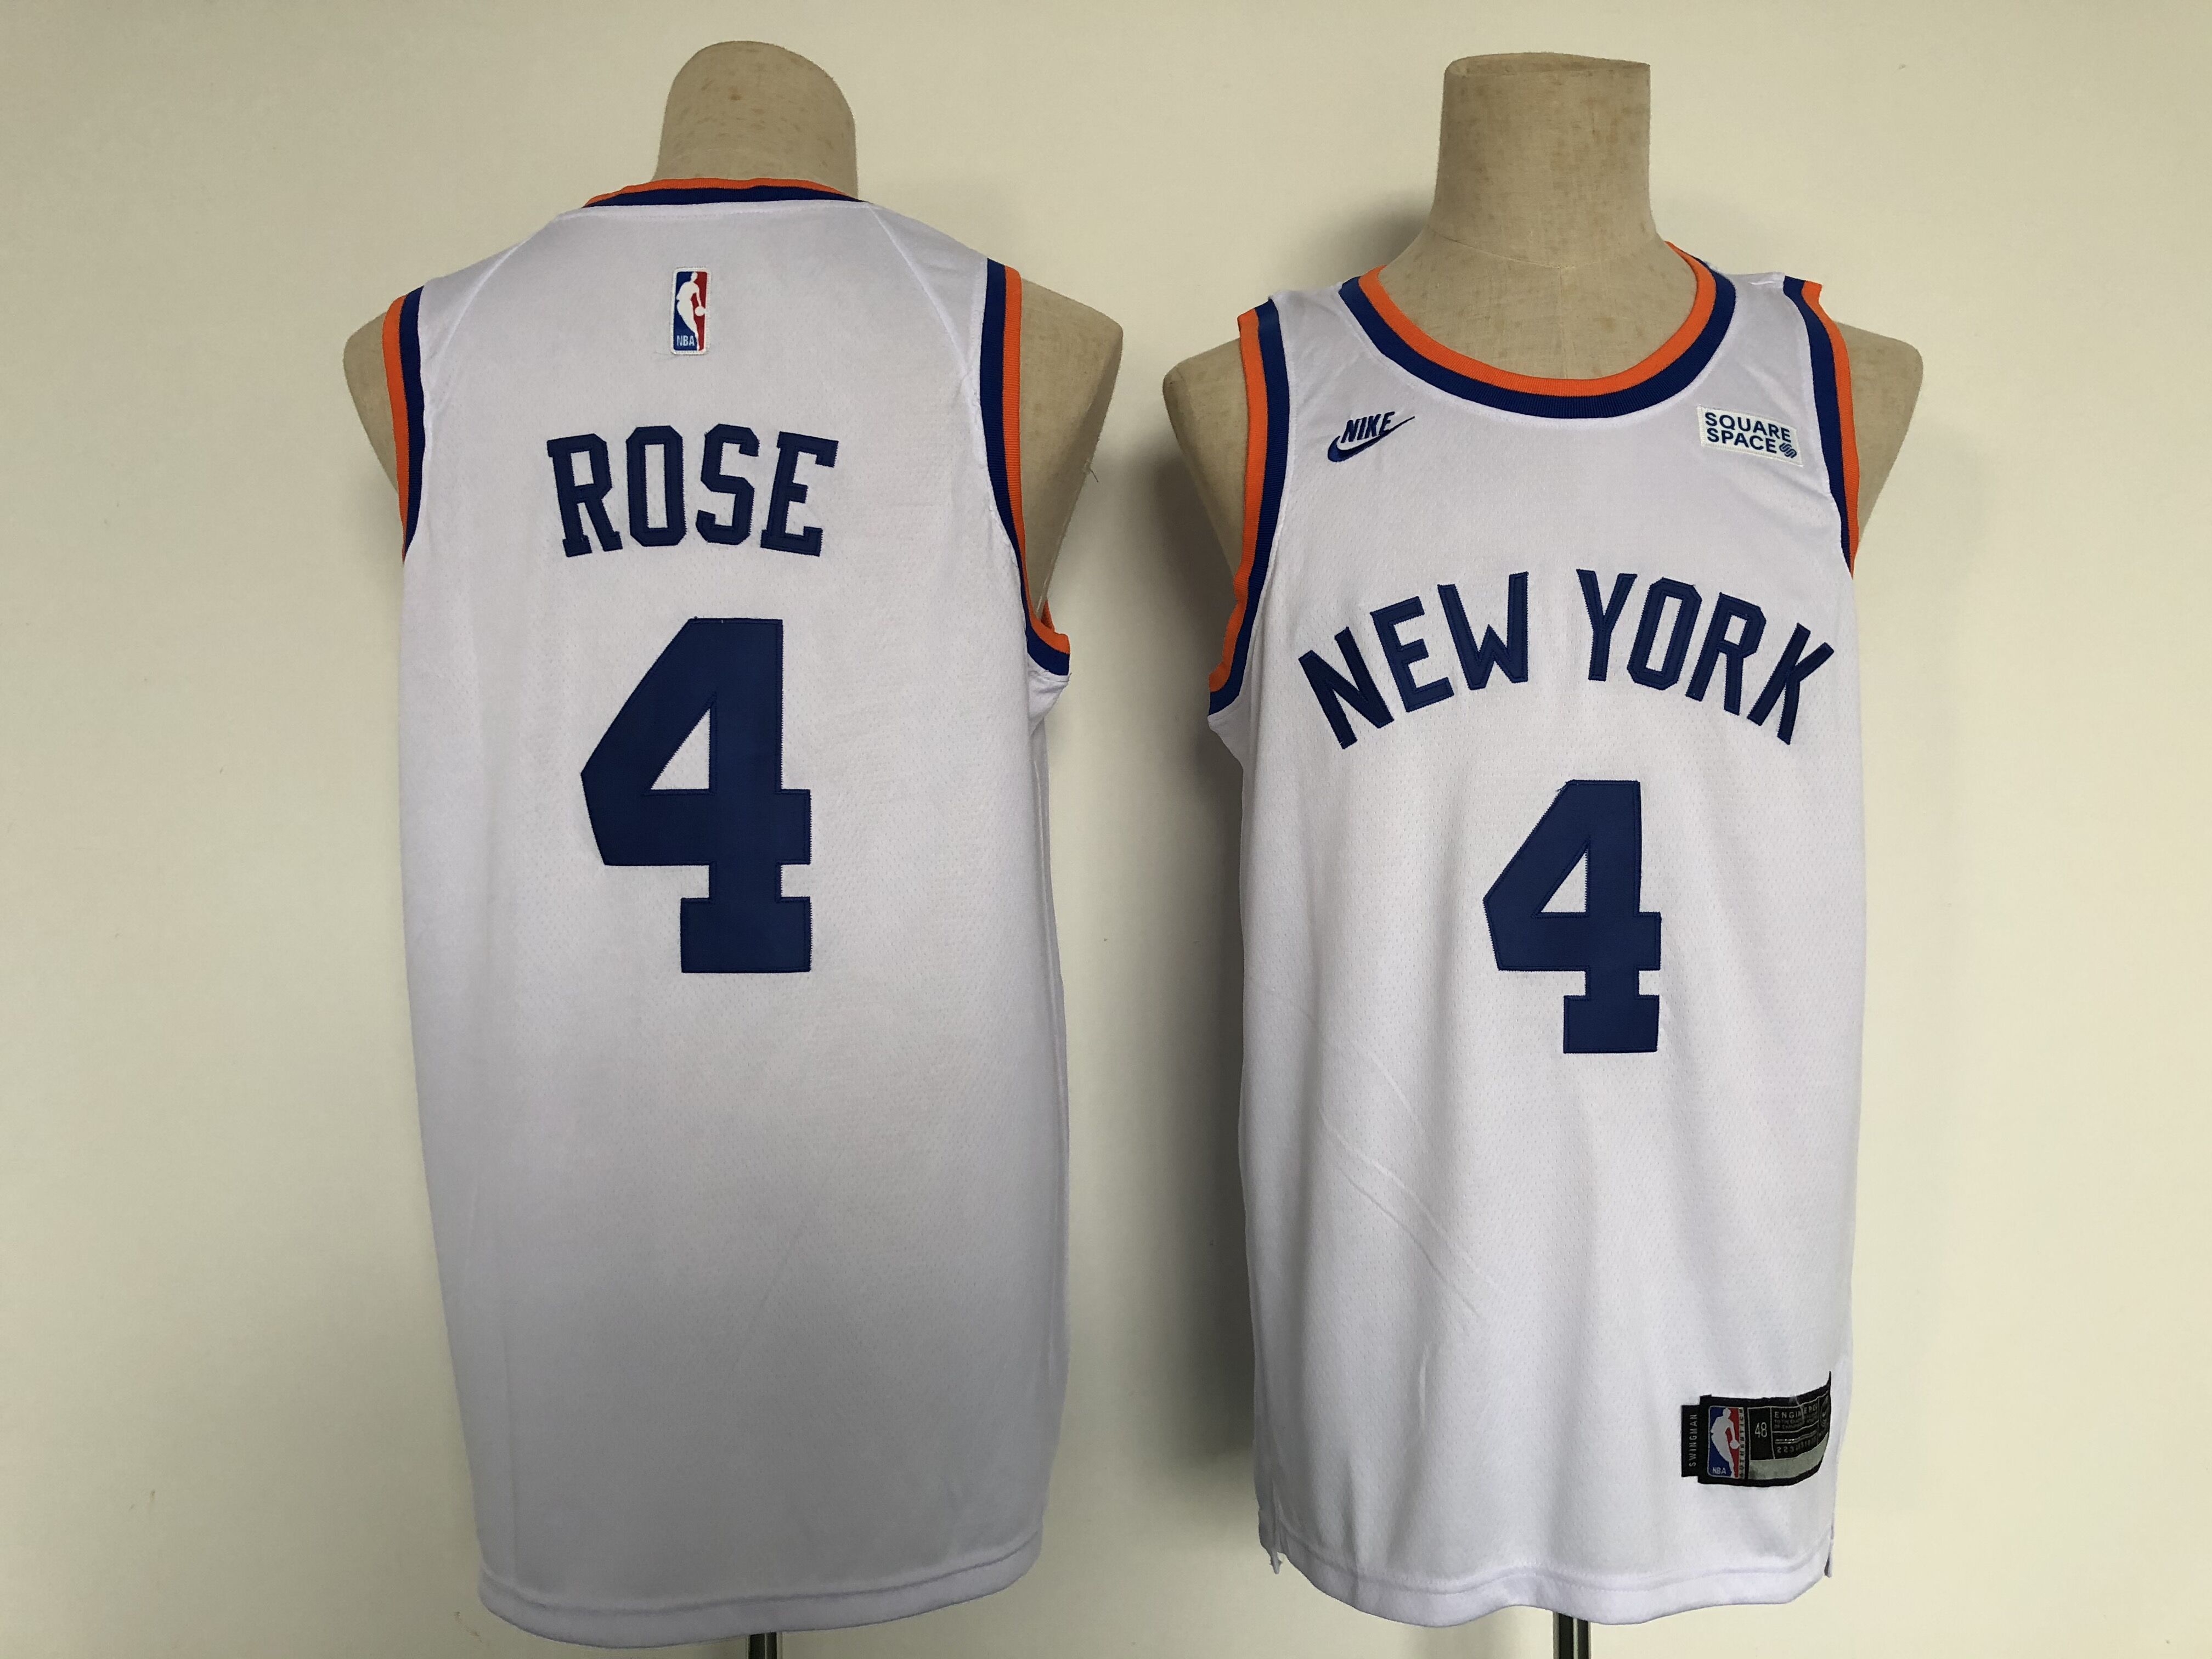 2022 Men New York Knicks #4 Rose White Nike city Edition NBA Jersey->new york knicks->NBA Jersey